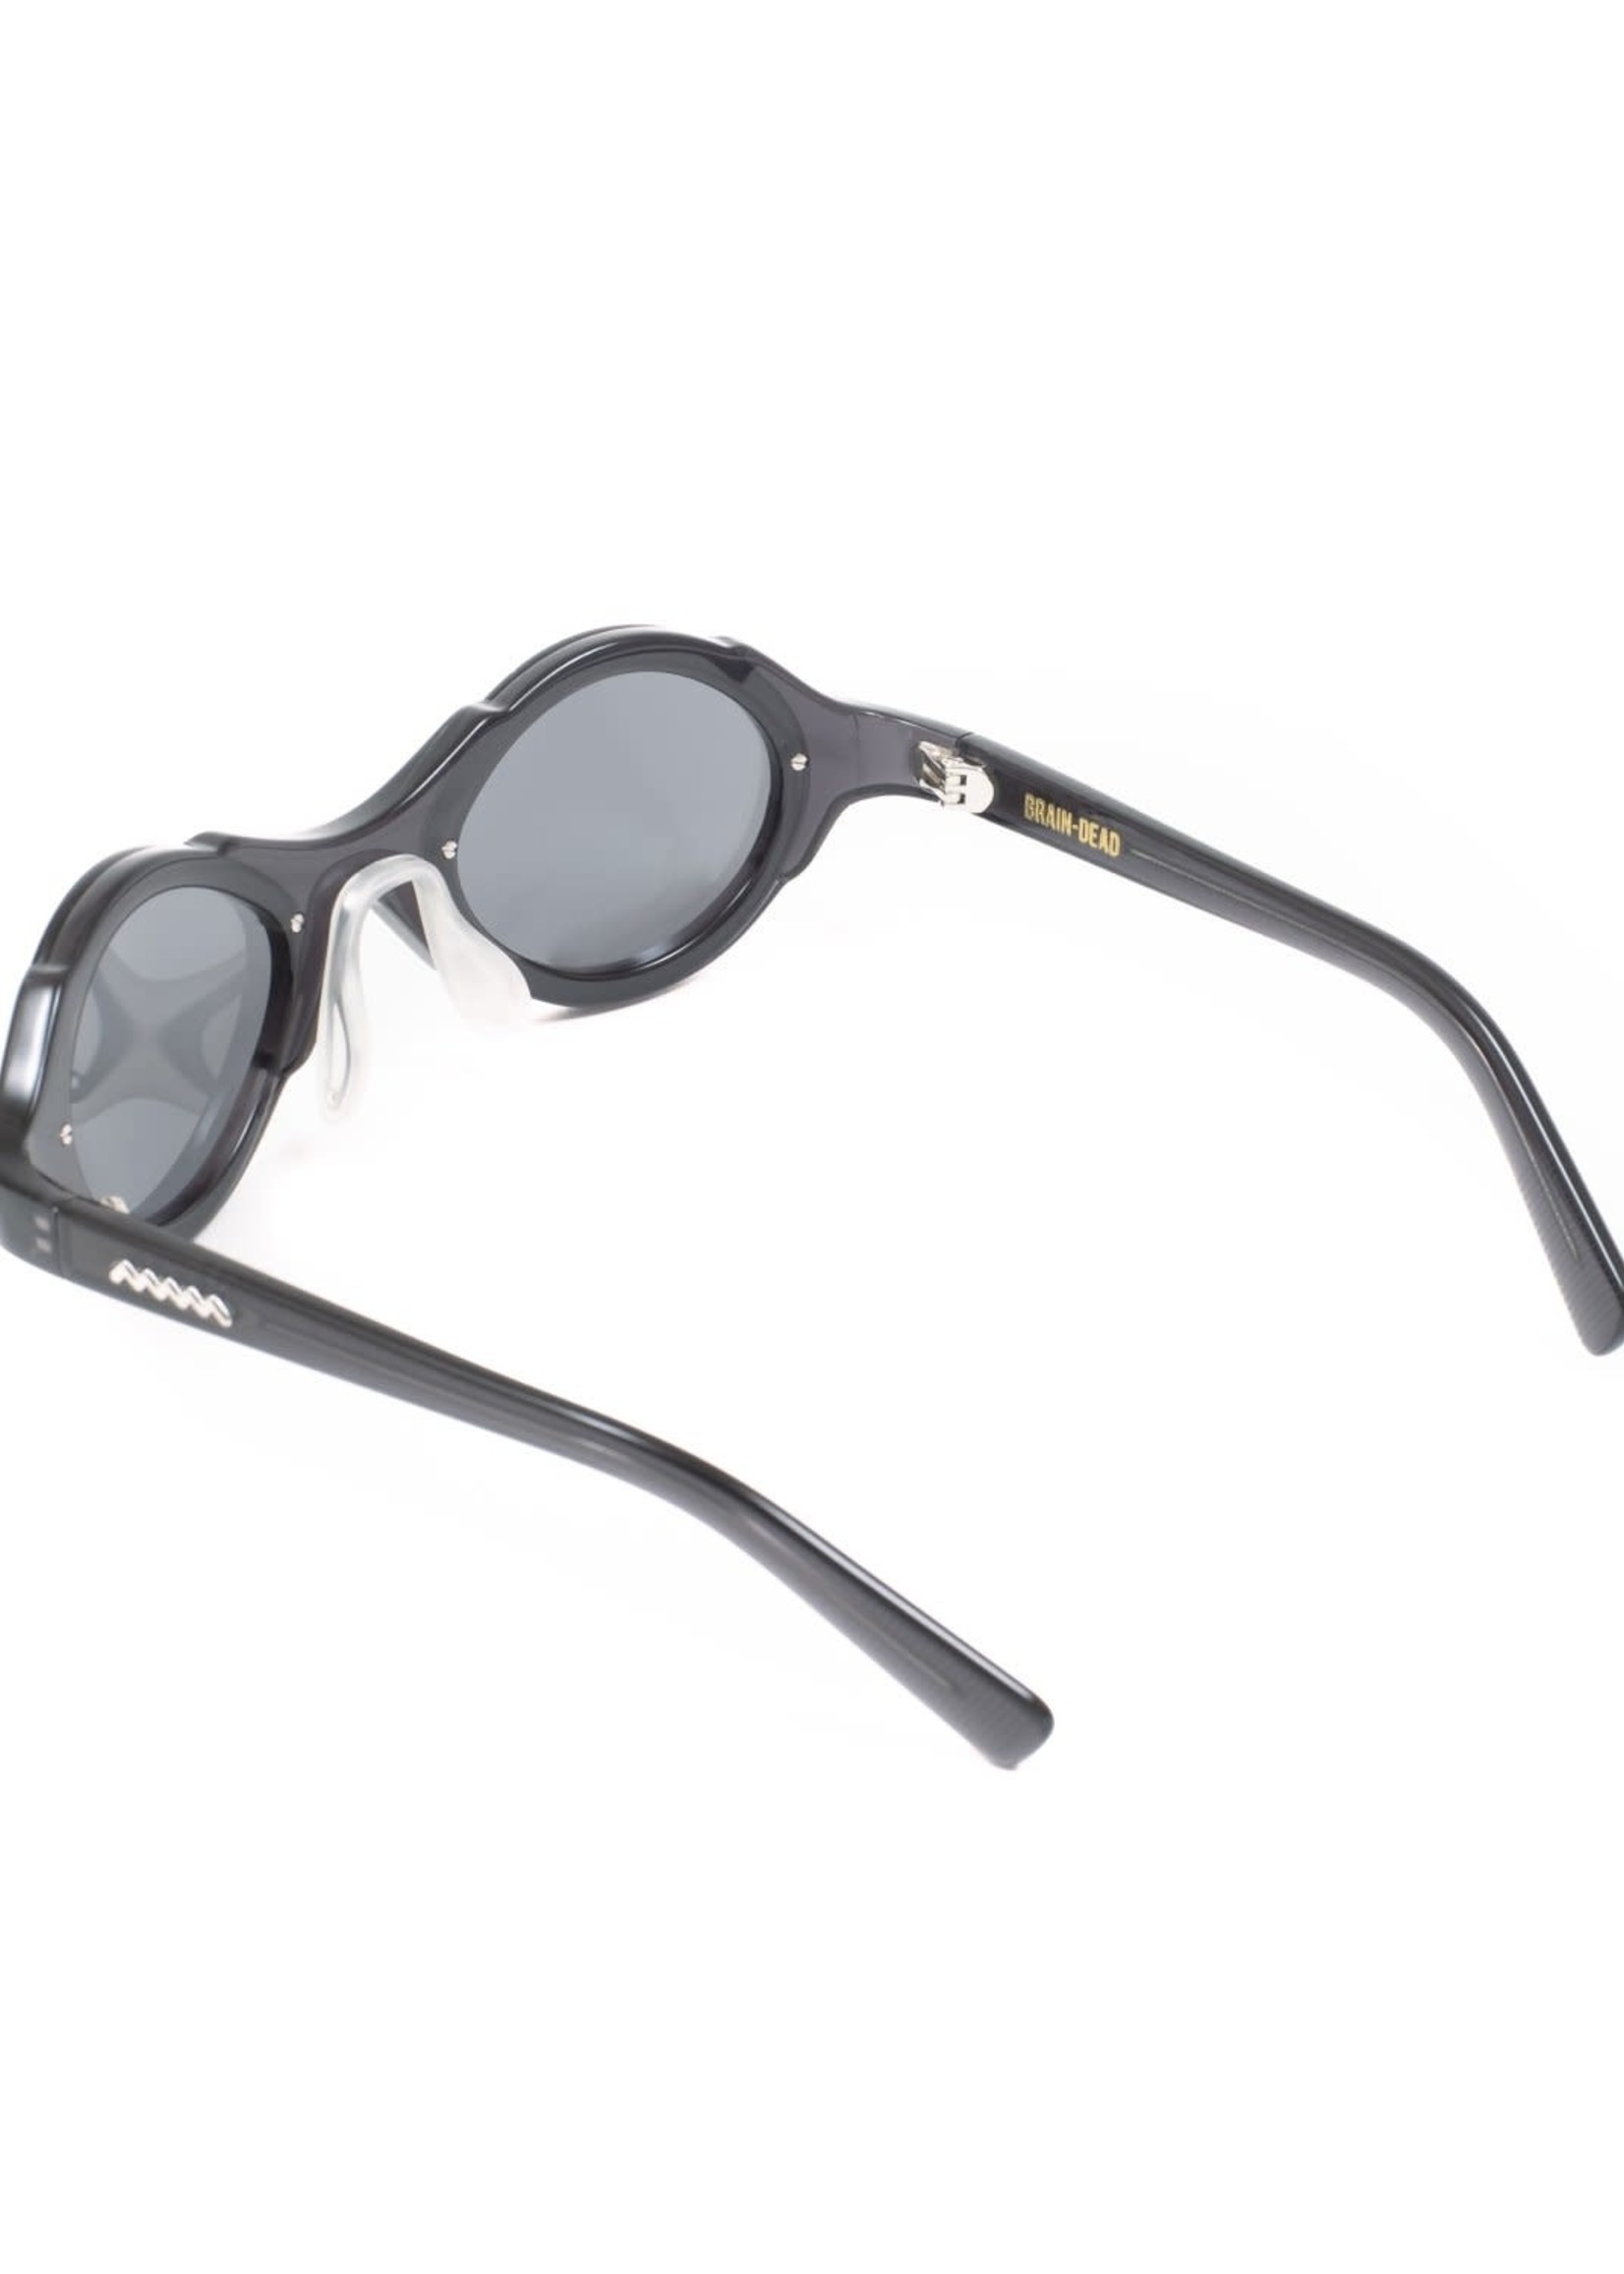 Brain Dead Mutant Sunglasses in Black / Silver Reflective